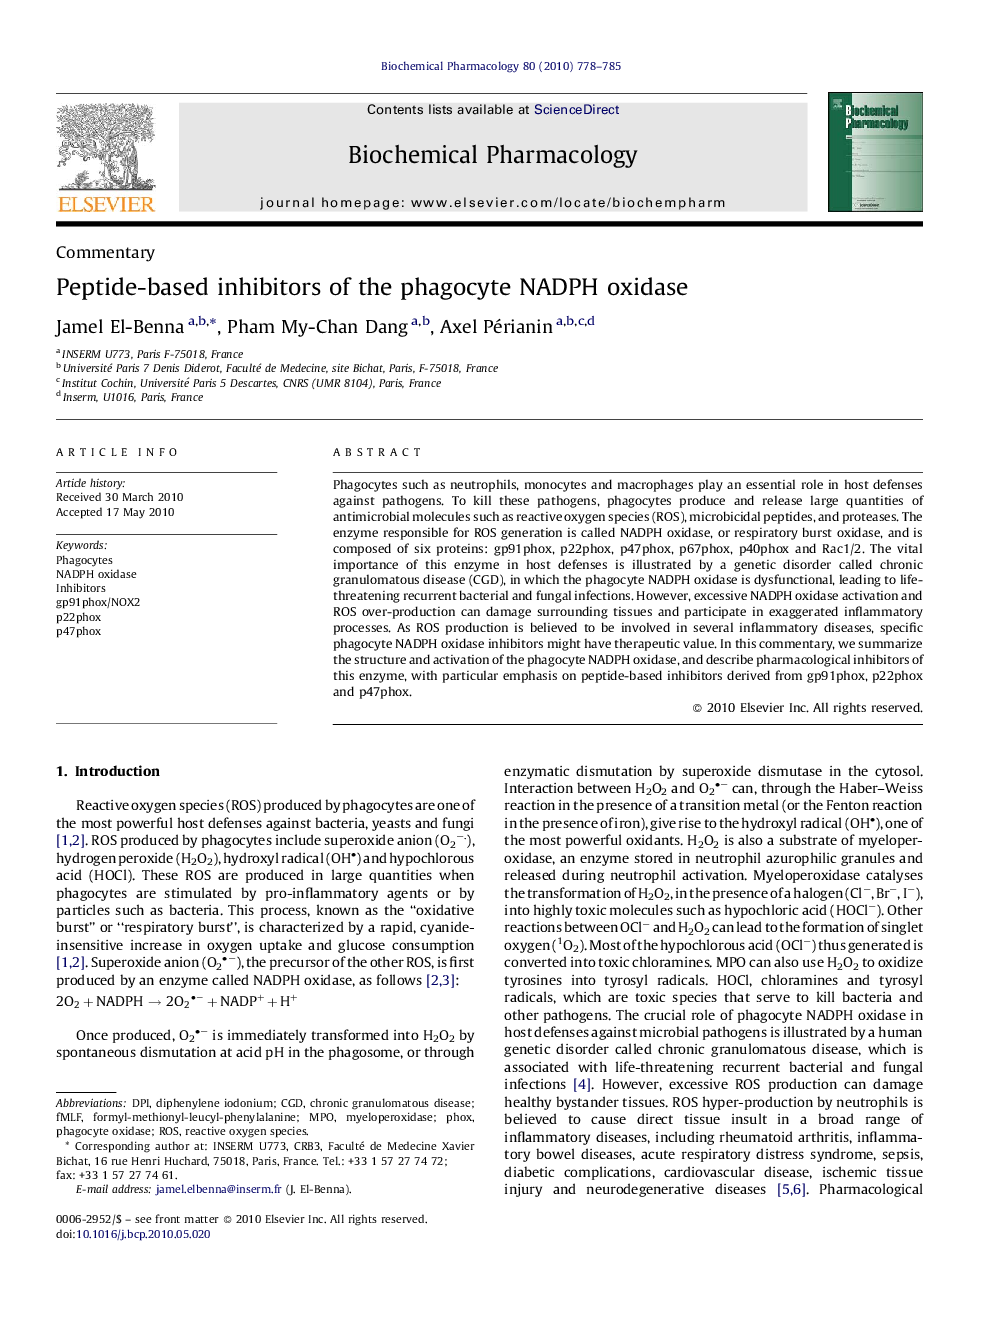 Peptide-based inhibitors of the phagocyte NADPH oxidase